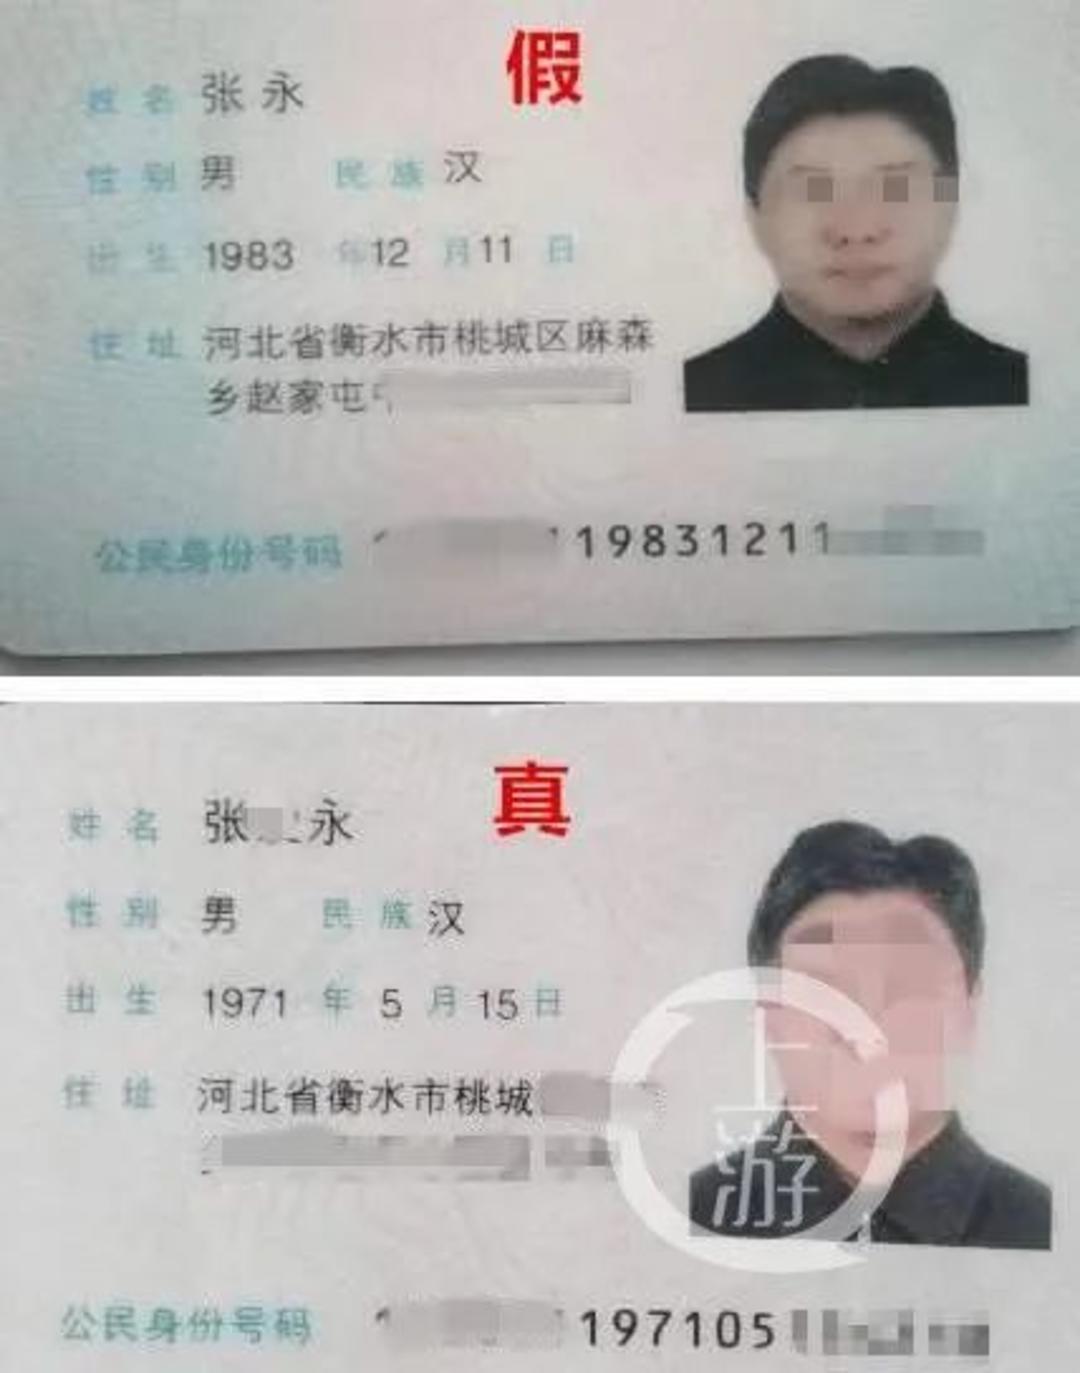 河北一政协常委被指使用假身份证在婚恋网上骗婚警方已立案